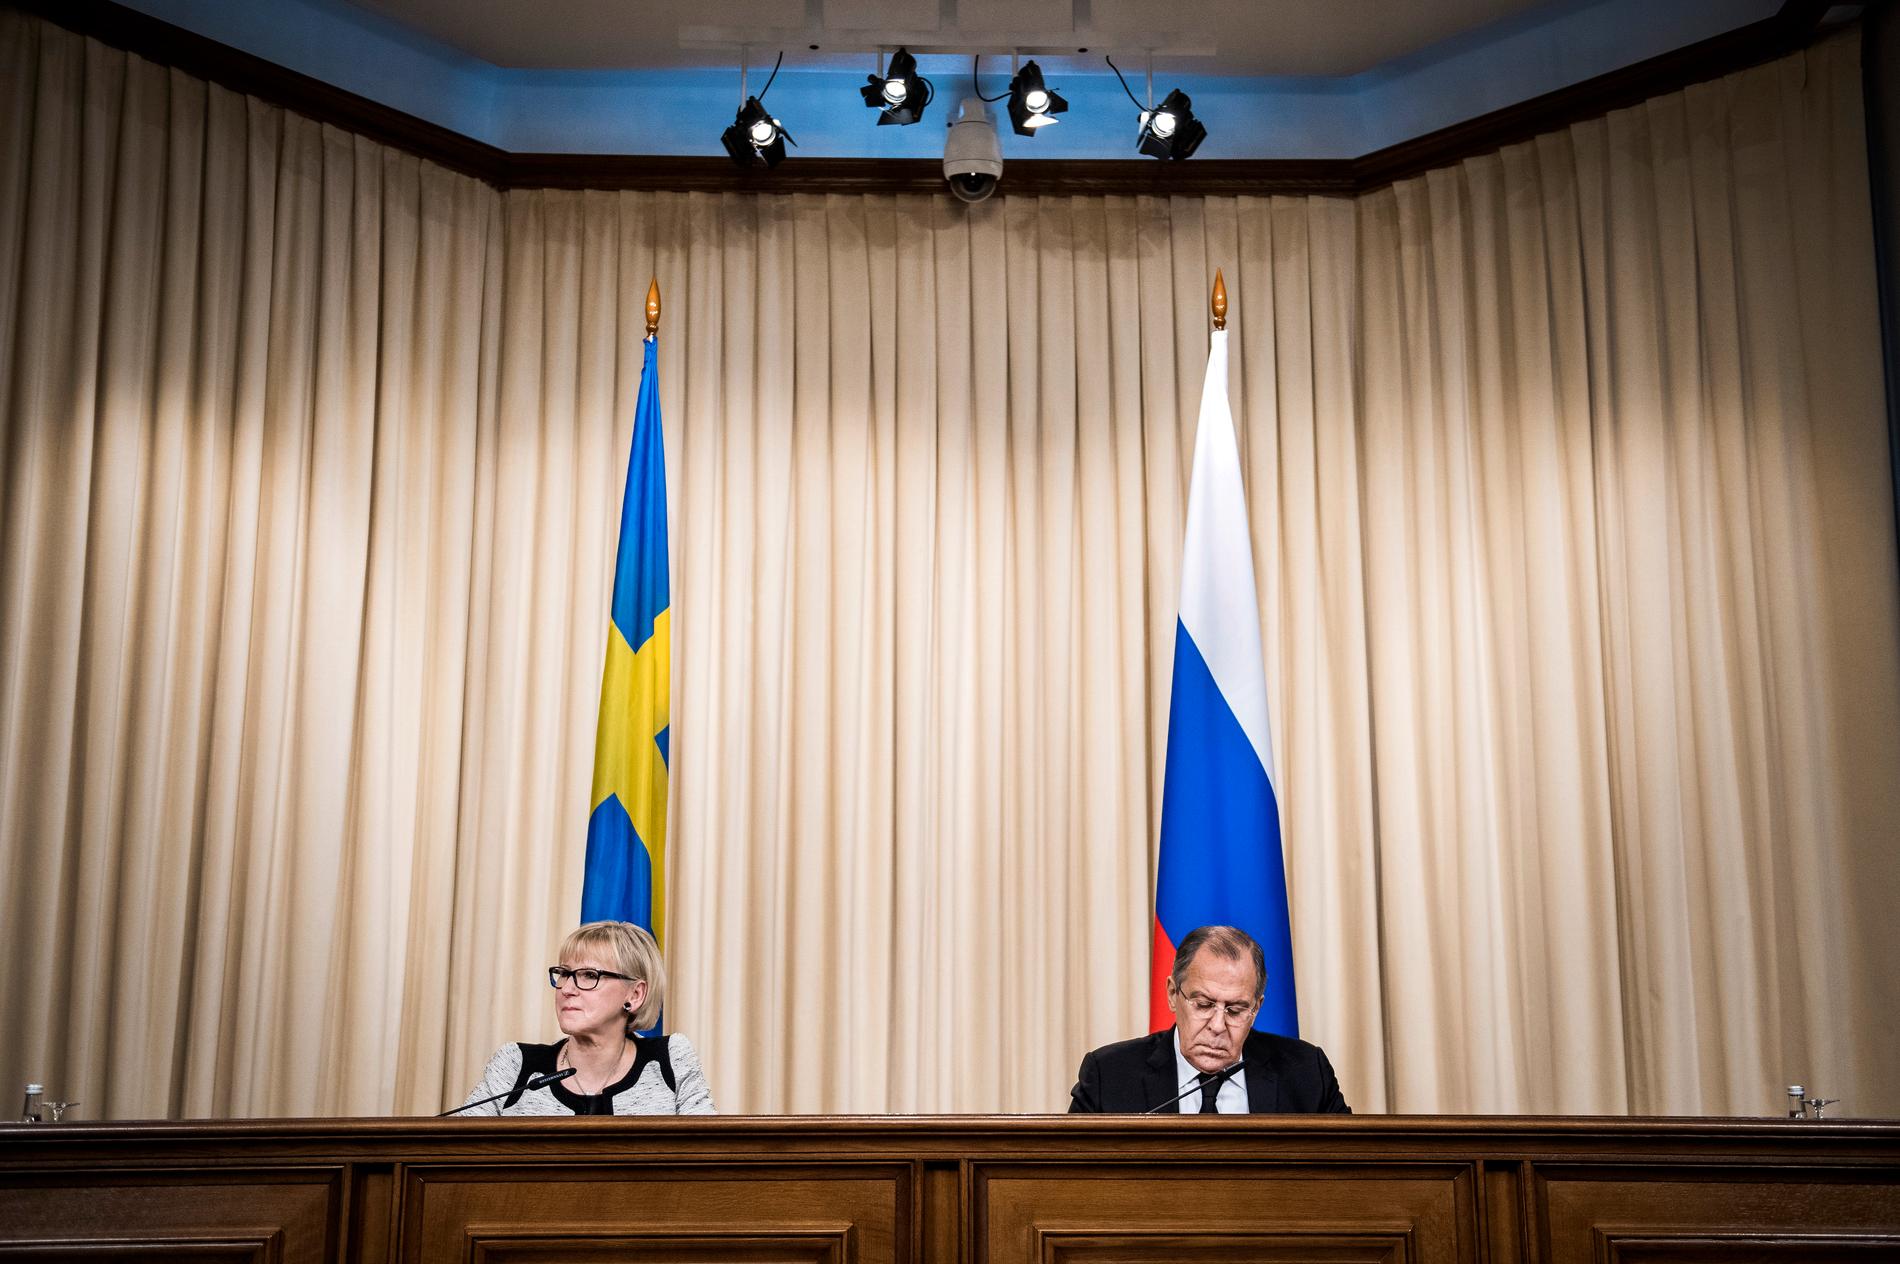 Sveriges utrikesminister Margot Wallström träffar son ryske kollega Sergey Lavrov i Moskva.